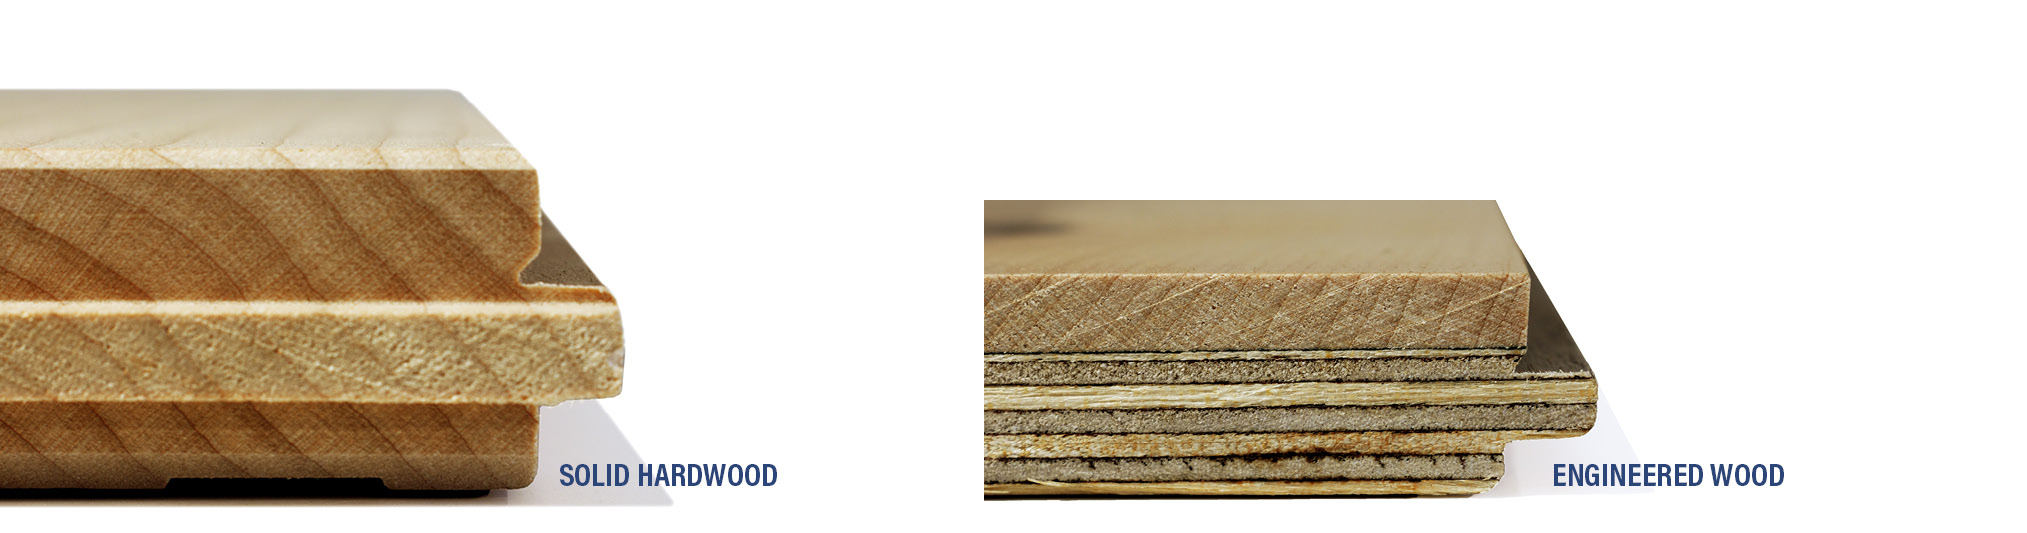 Solid hardwood vs. Engineered wood - PG Flooring